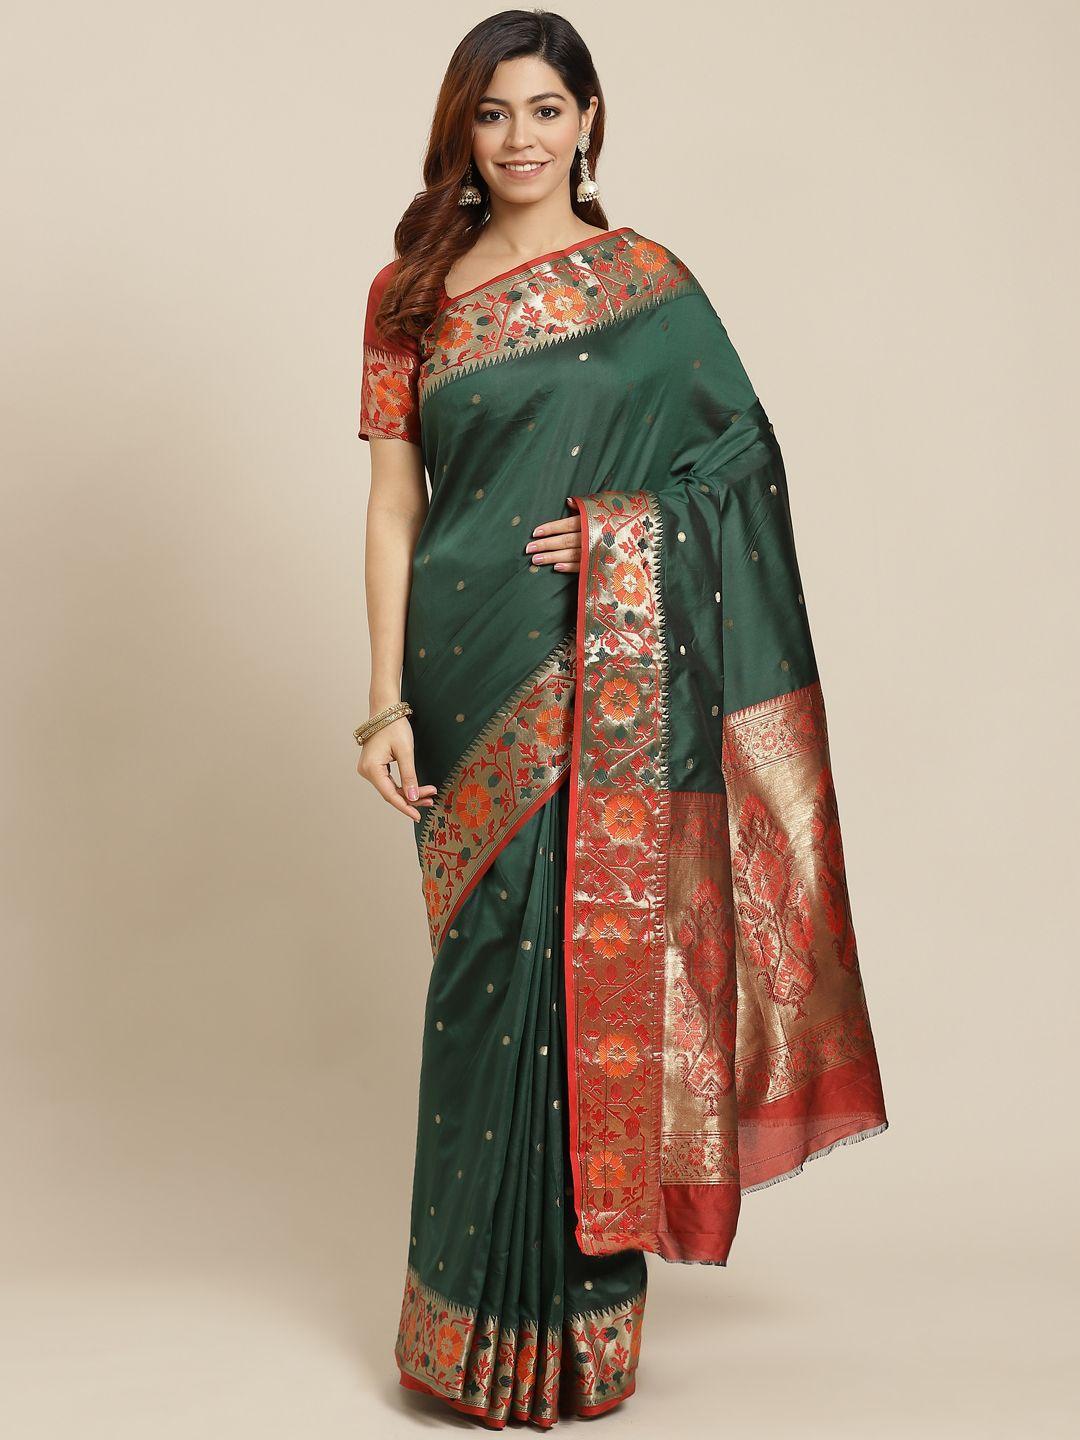 manohari green & golden woven design banarasi saree